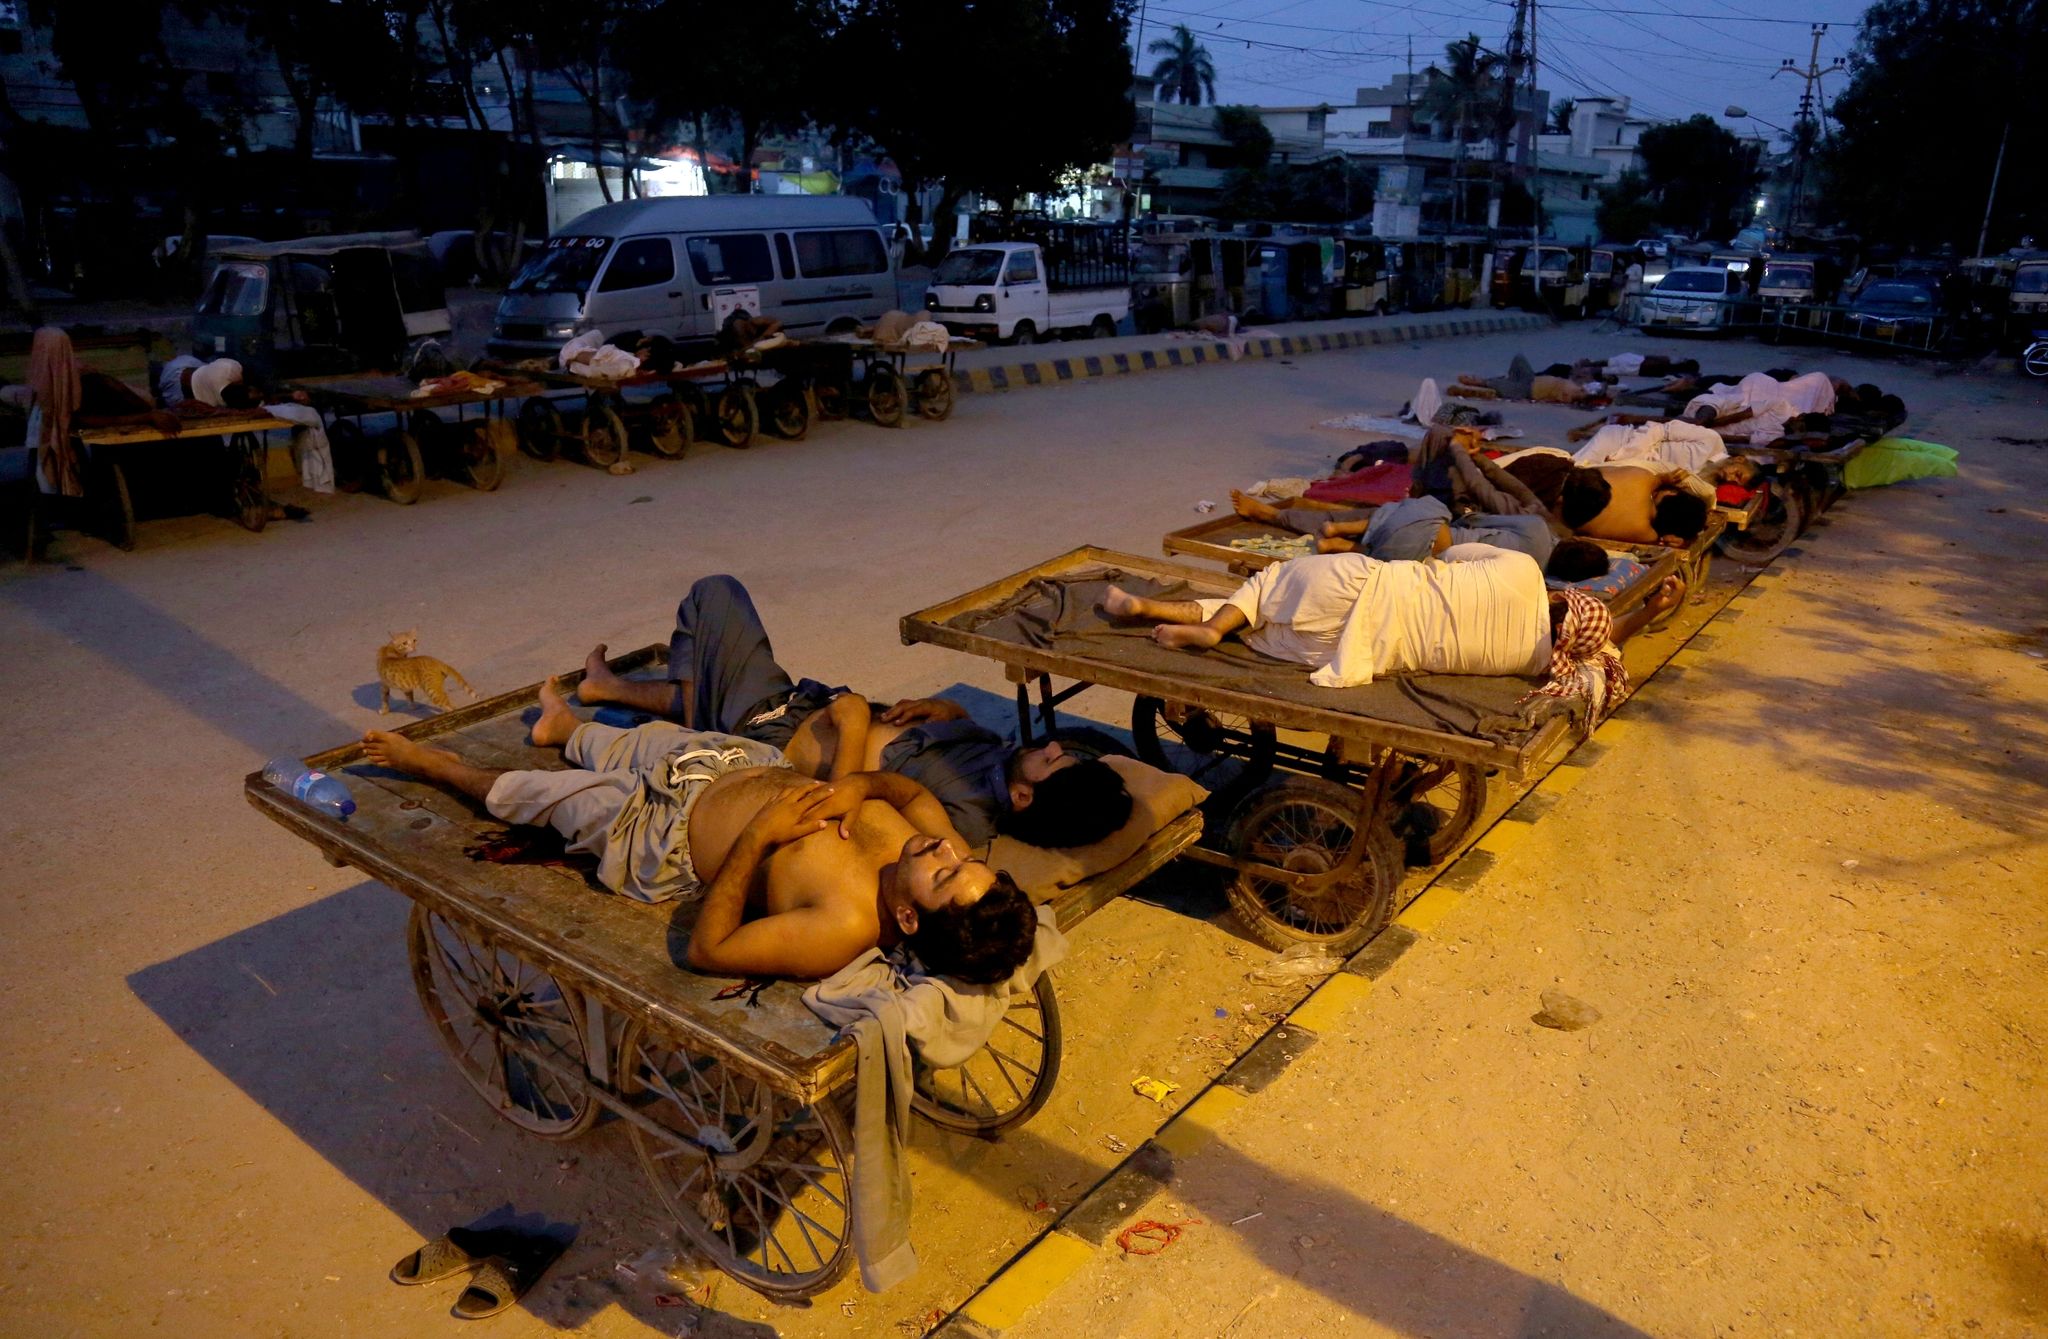 Verkäufer und Rikscha-Fahrer schlafen an einem heißen Sommermorgen im Freien.